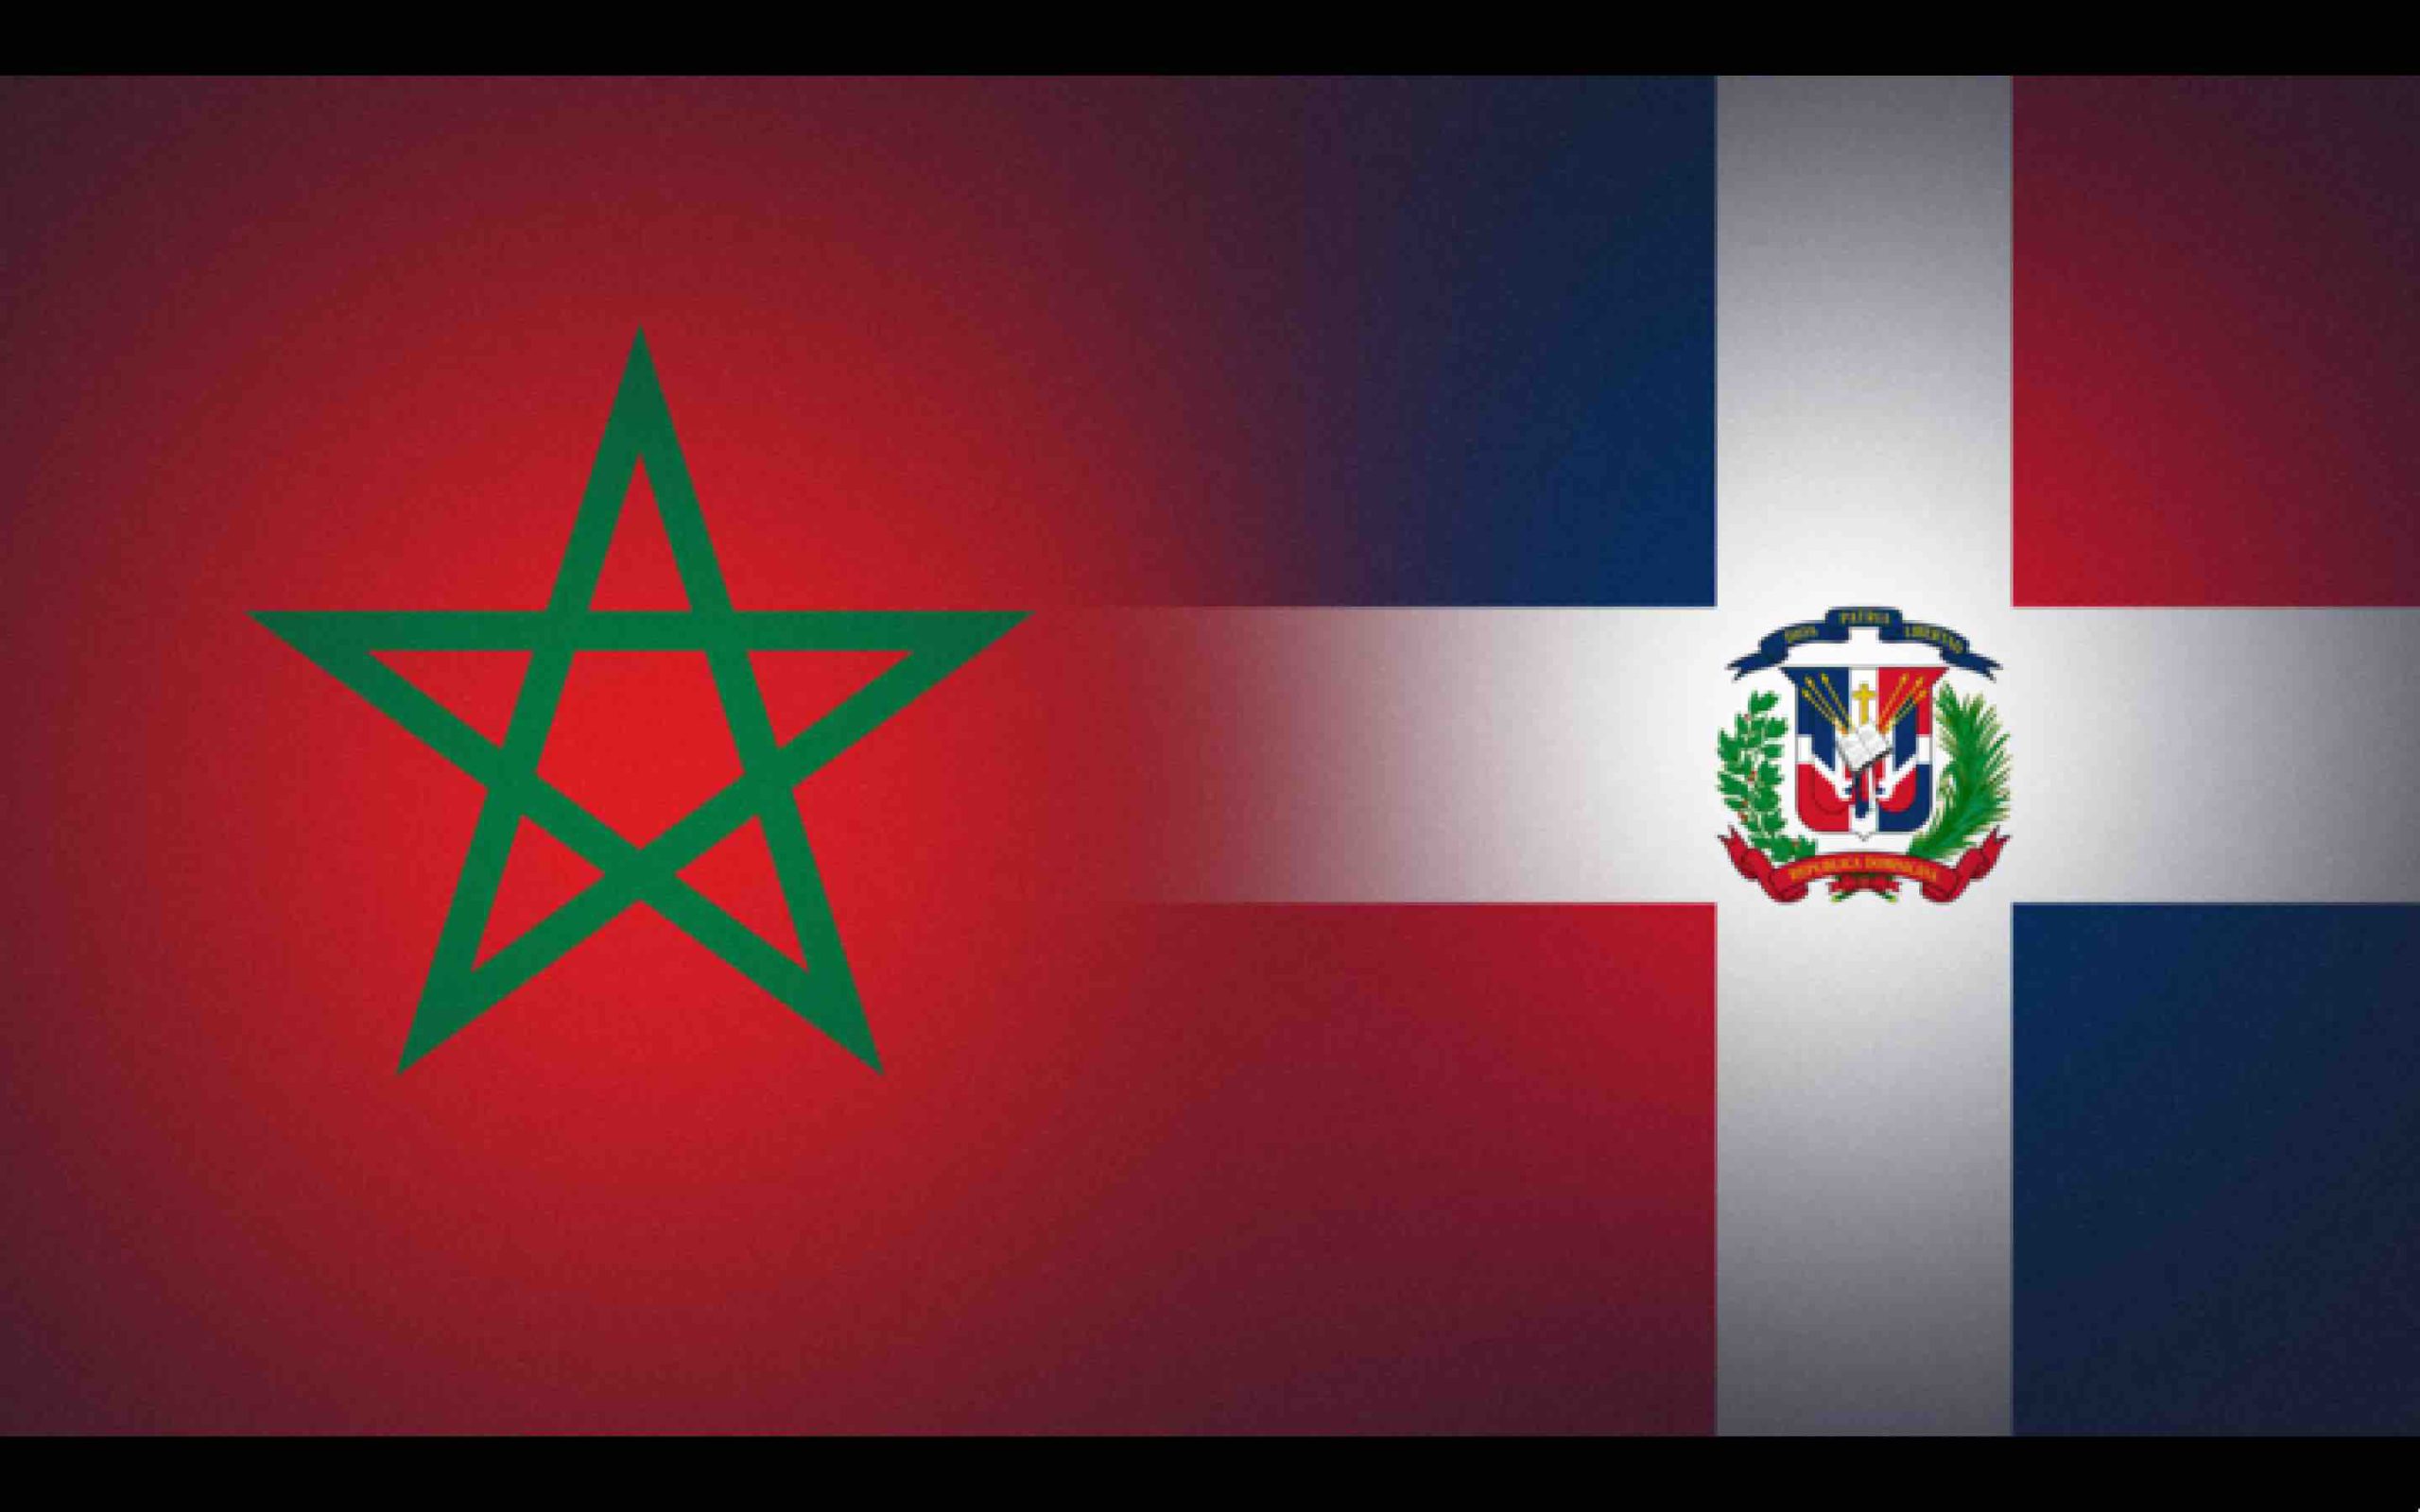 Maroc République dominicaine Morocco Dominican Republic